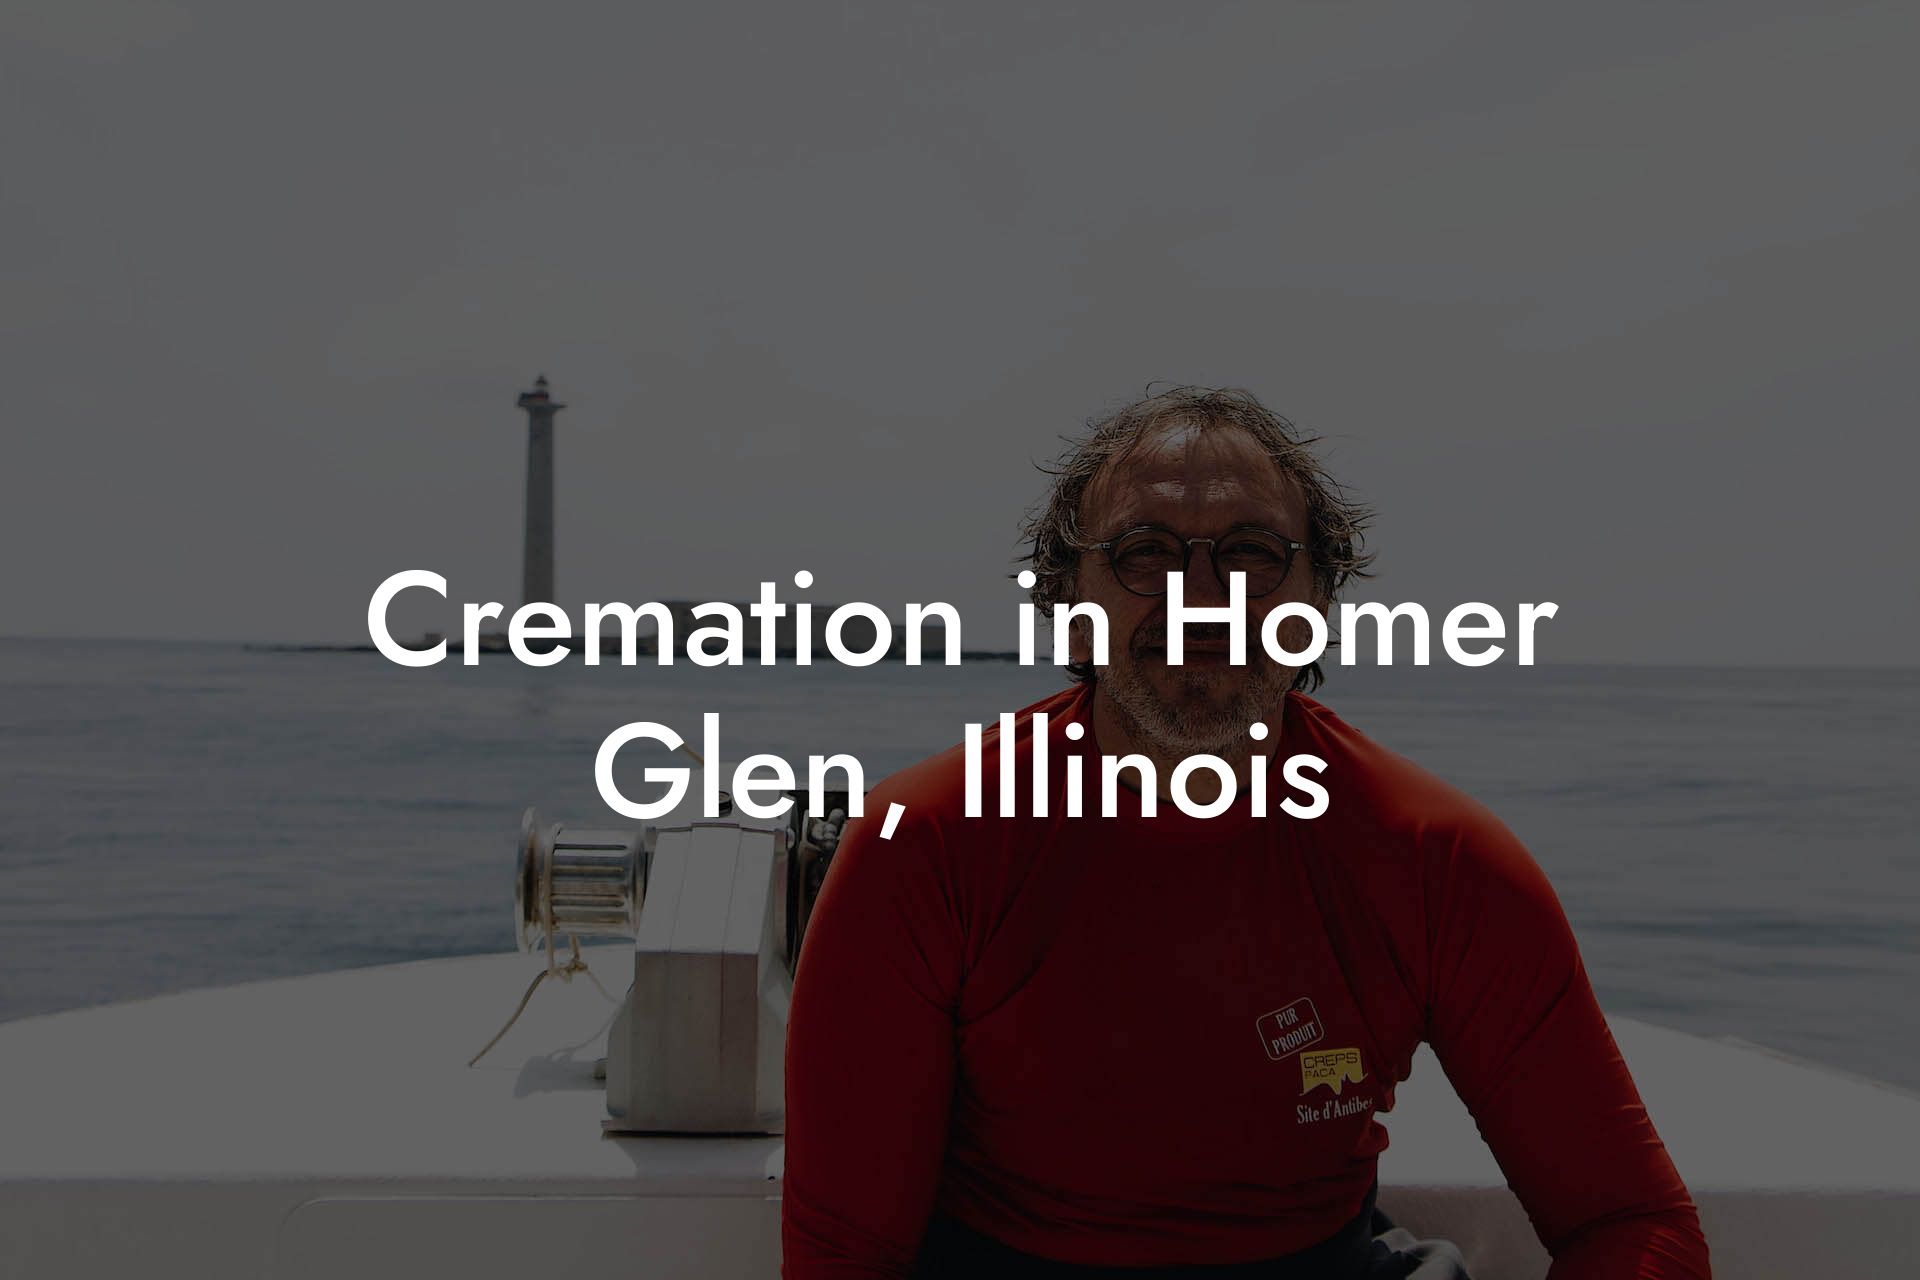 Cremation in Homer Glen, Illinois